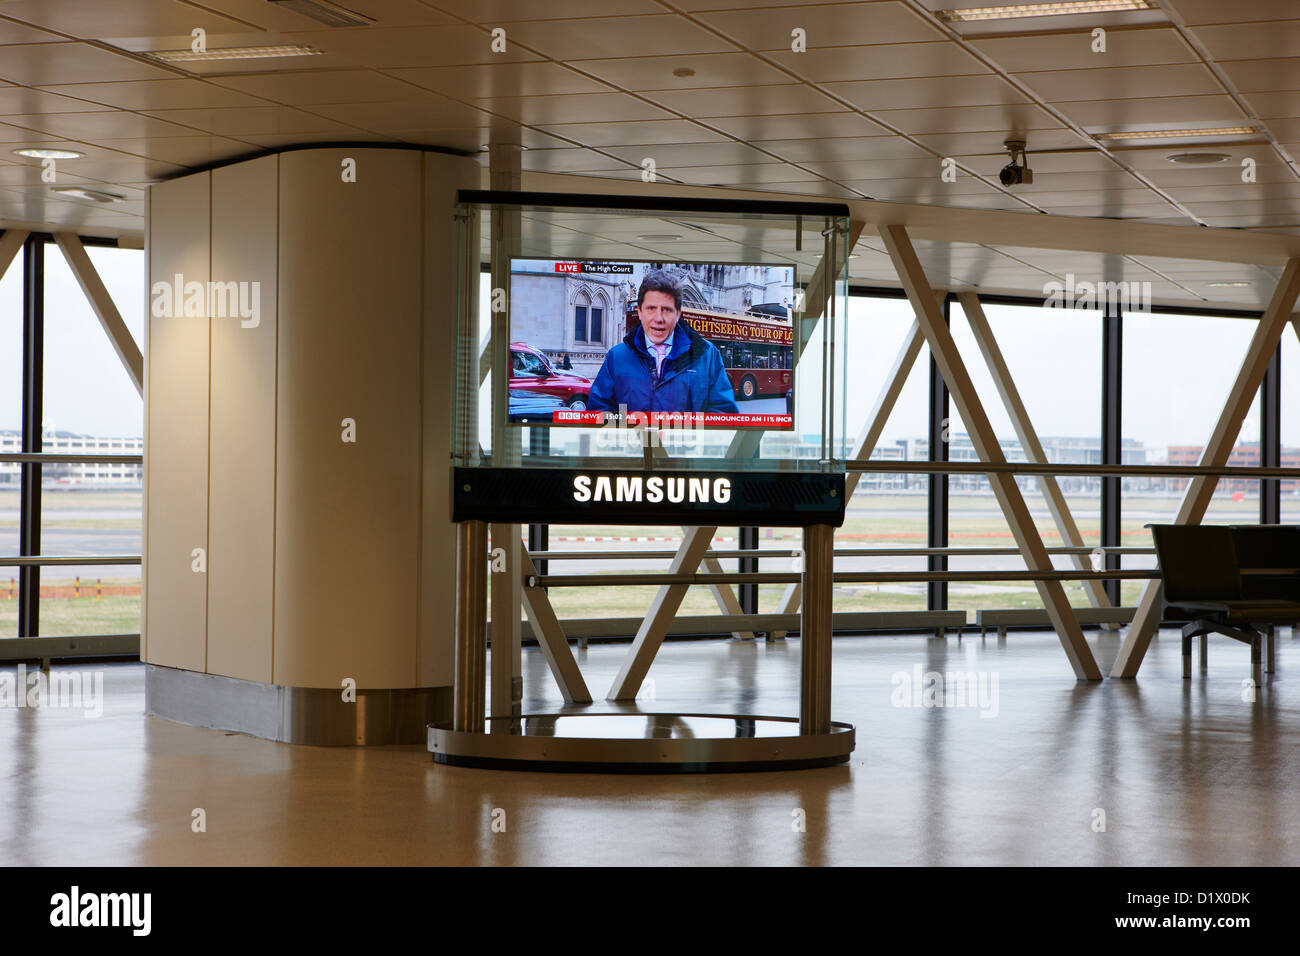 Samsung große Panel Fernsehen zeigt bbc Nachrichten am terminal 1 Passagier terminal Gebäude Heathrow Flughafen London uk Stockfoto